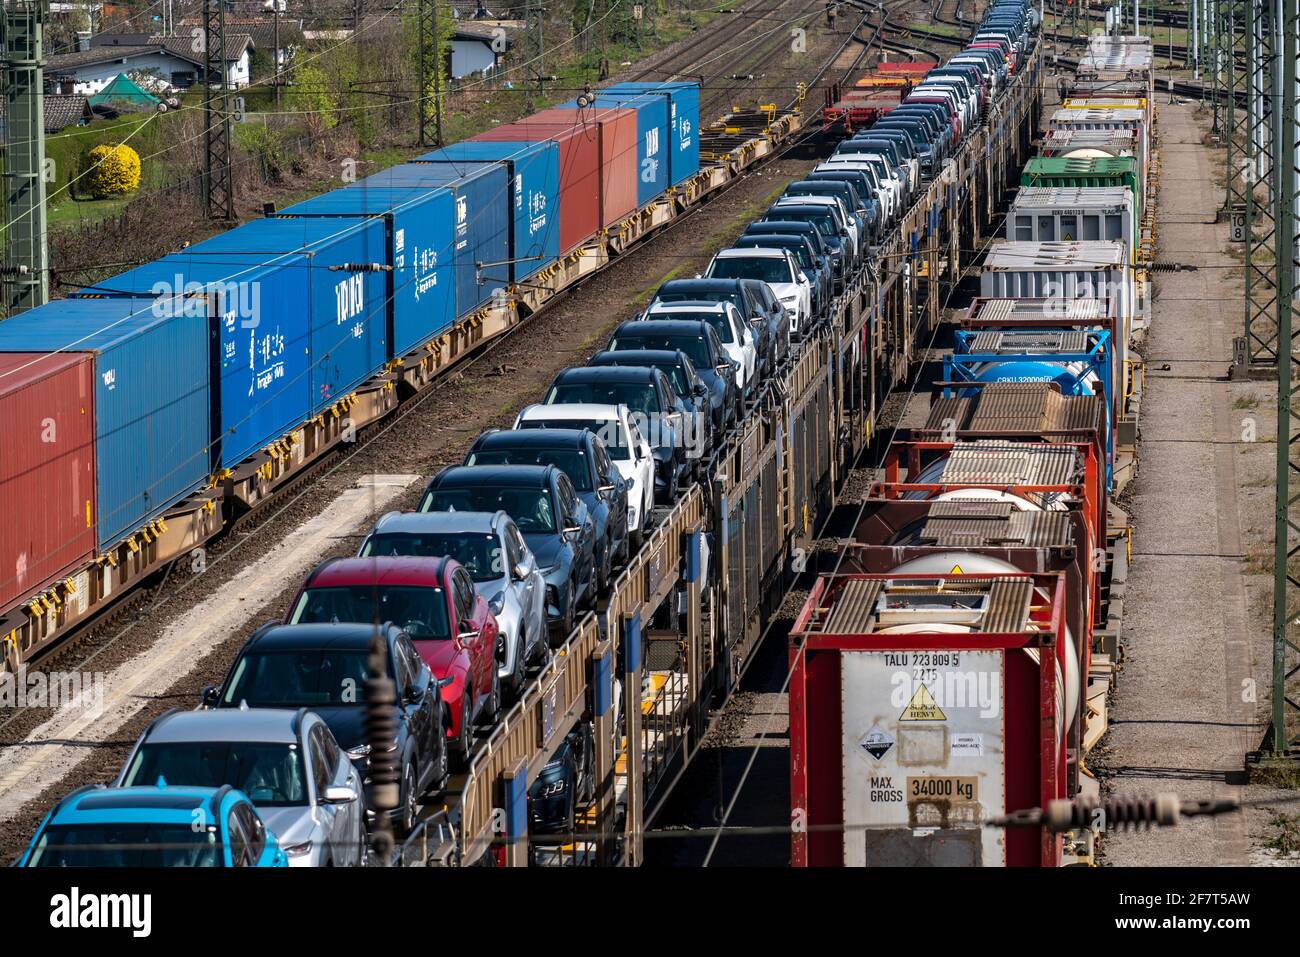 Station de fret Duisburg-Rheinhausen, dans la zone portuaire de Logport, trains de marchandises chargés de nouvelles voitures, de divers conteneurs-citernes et du train de conteneurs Banque D'Images